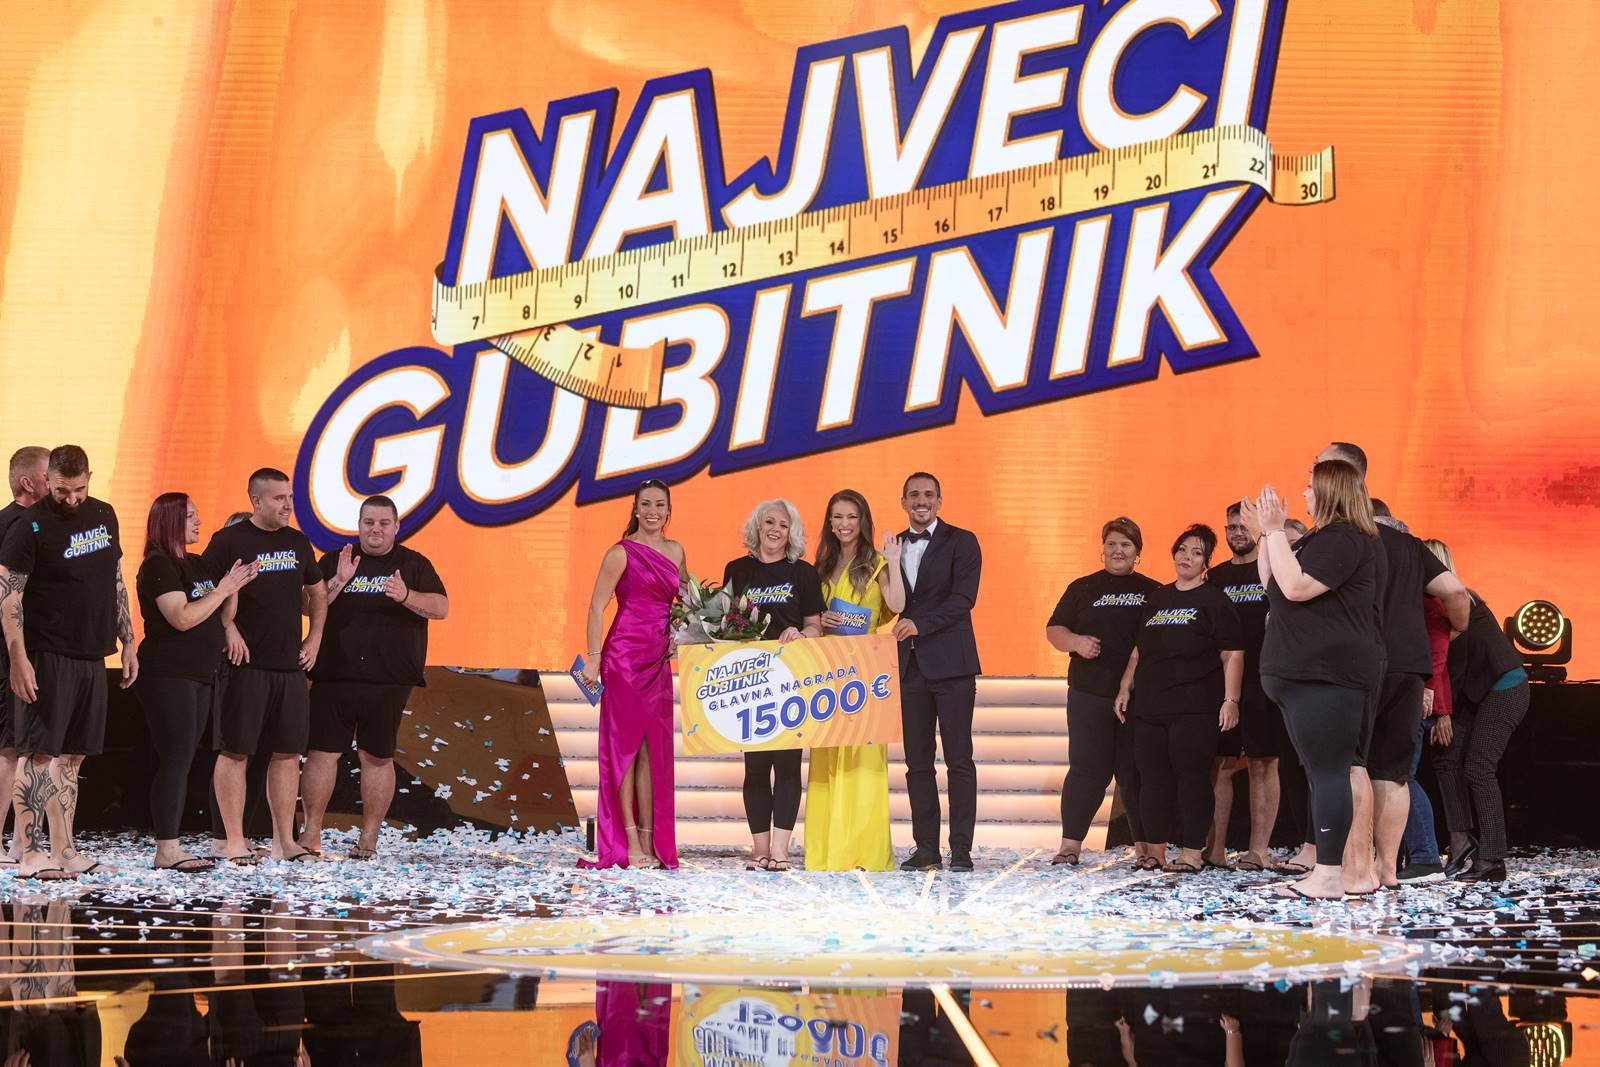 Dijana Konstantinović odnela pobedu i 15.000 evra u finalu druge sezone "Najvećeg gubitnika"